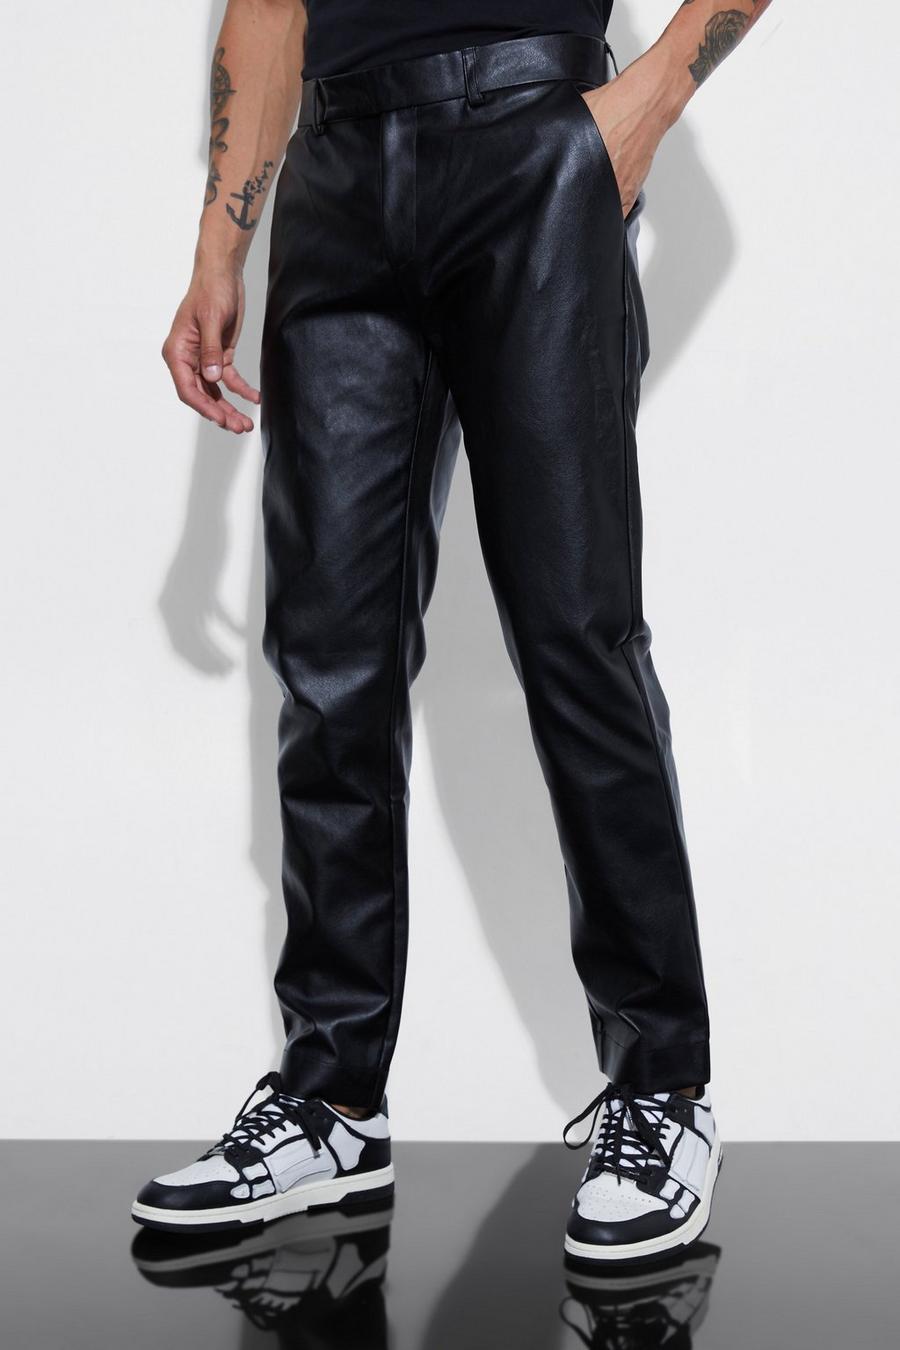 Pantalón ajustado de cuero sintético, Black nero